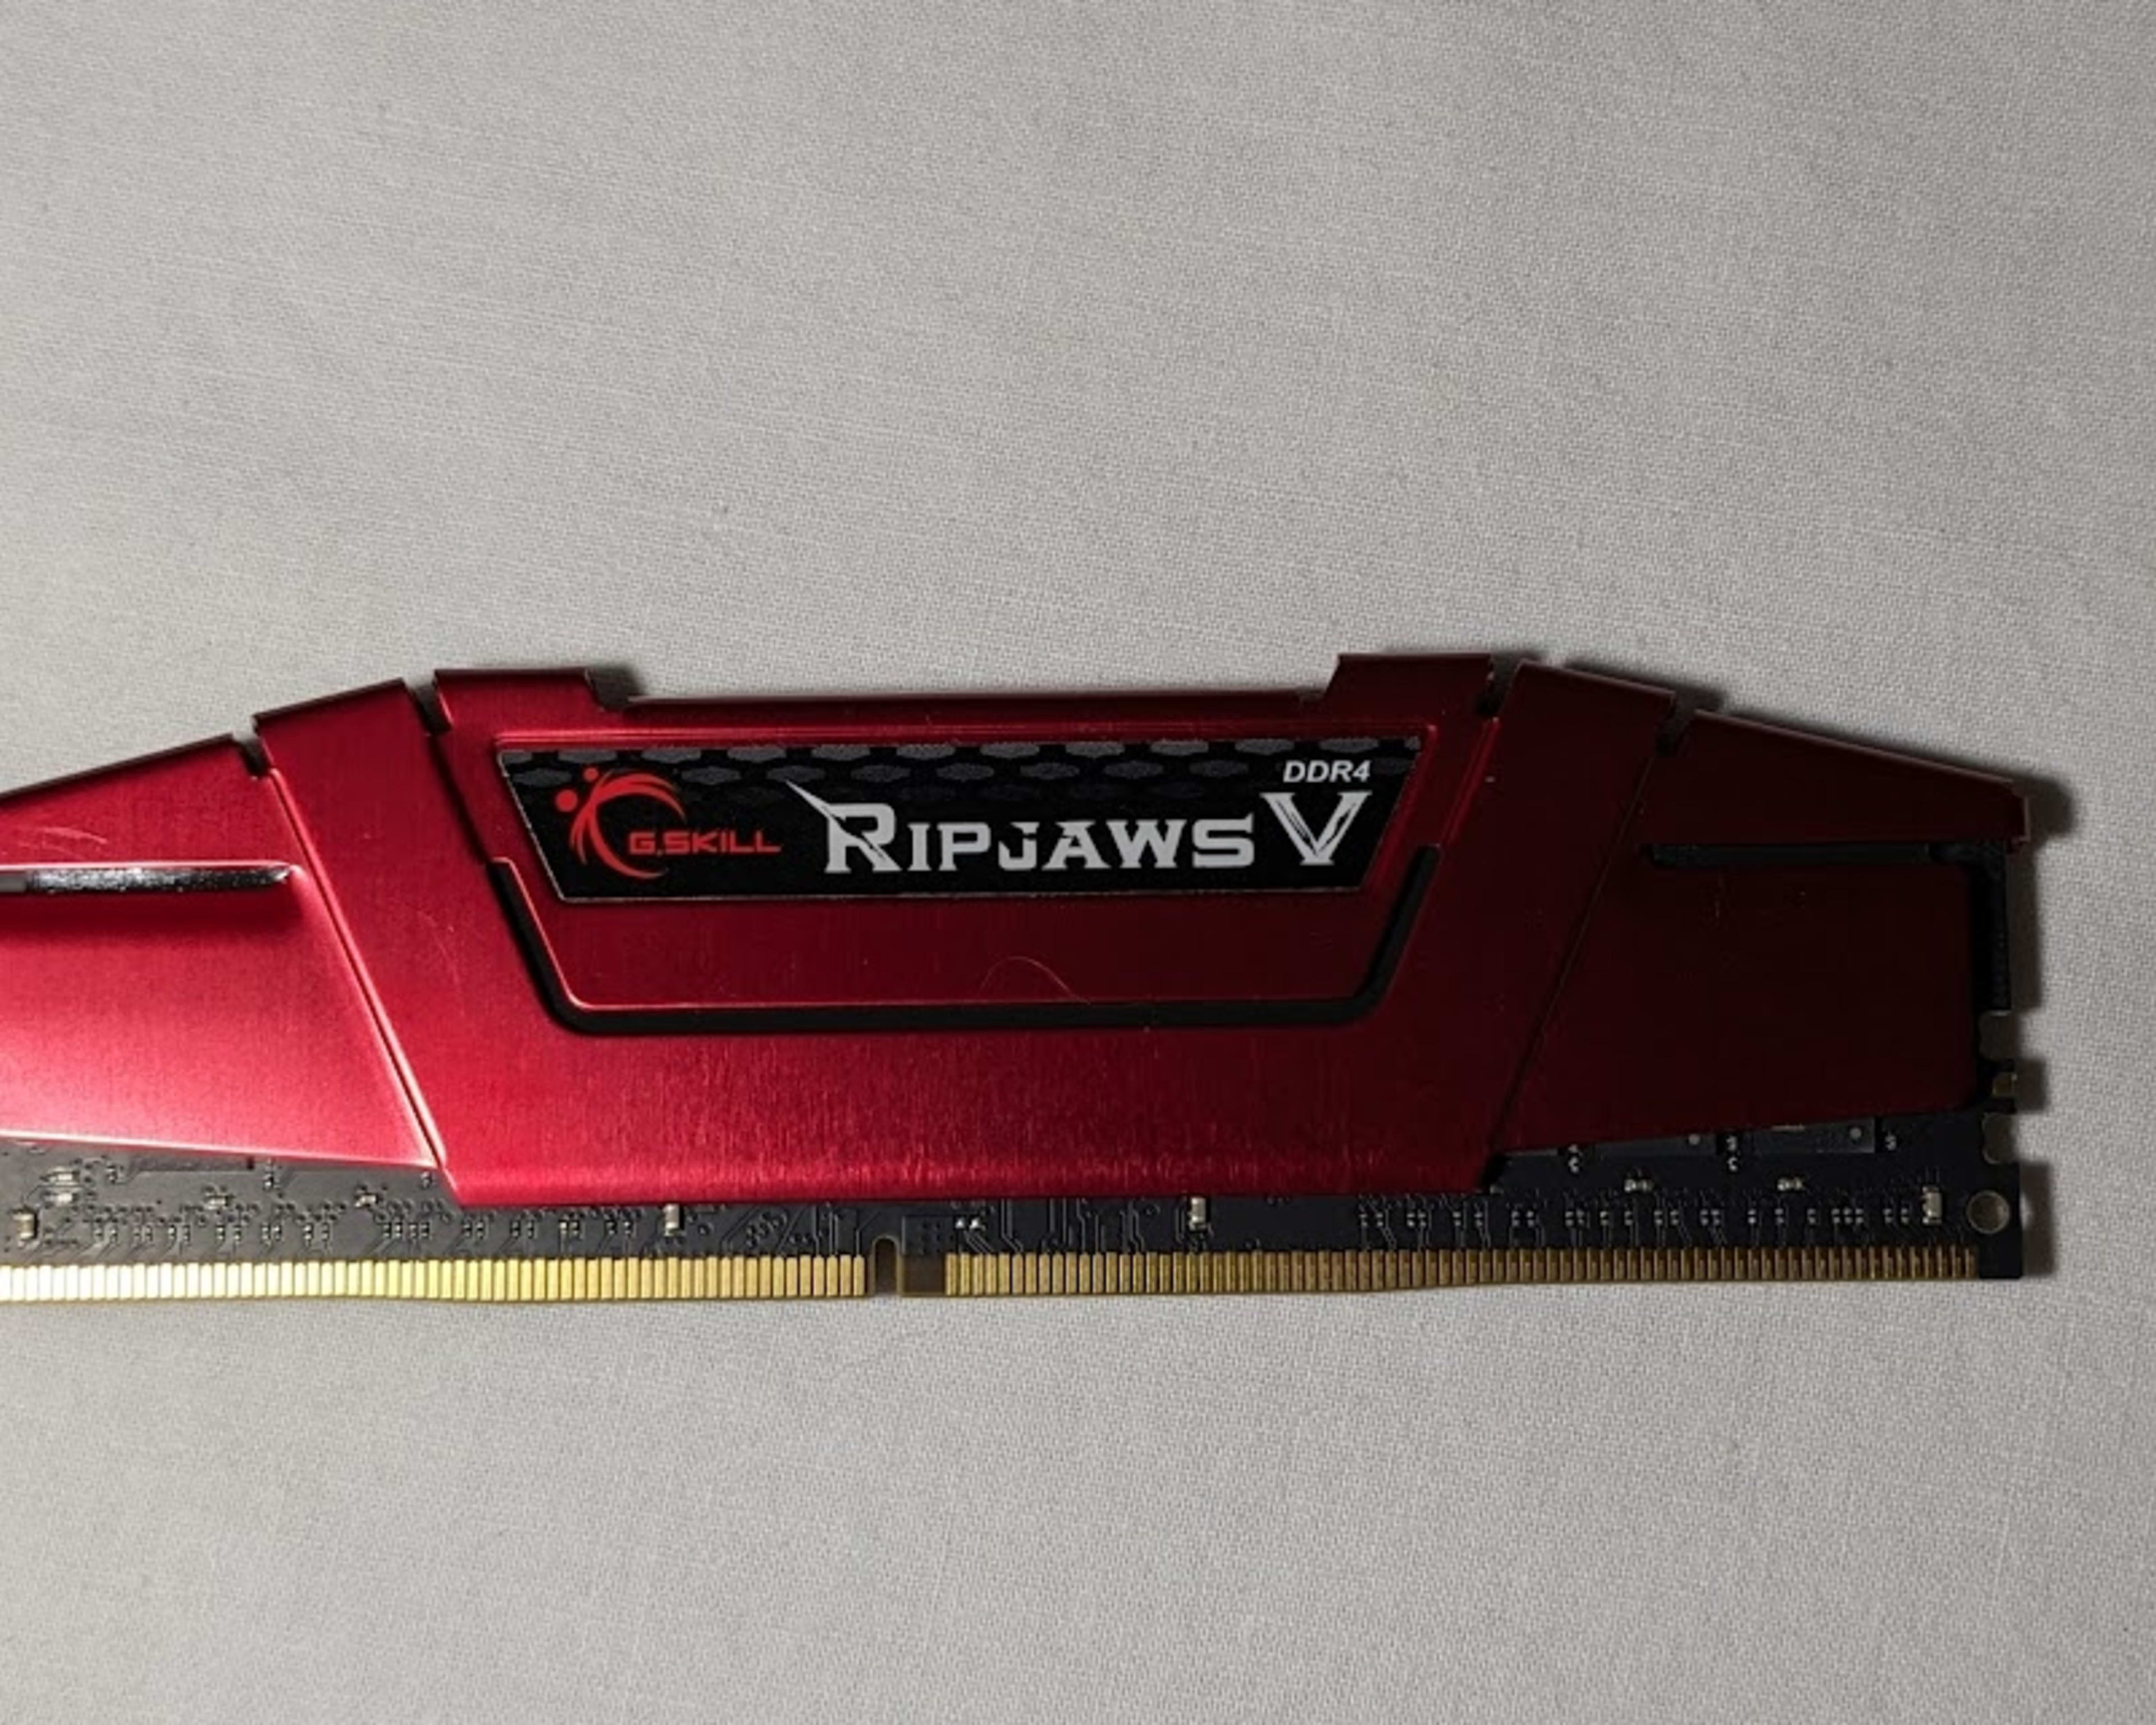 Ripjaws V and Ballistix DDR4